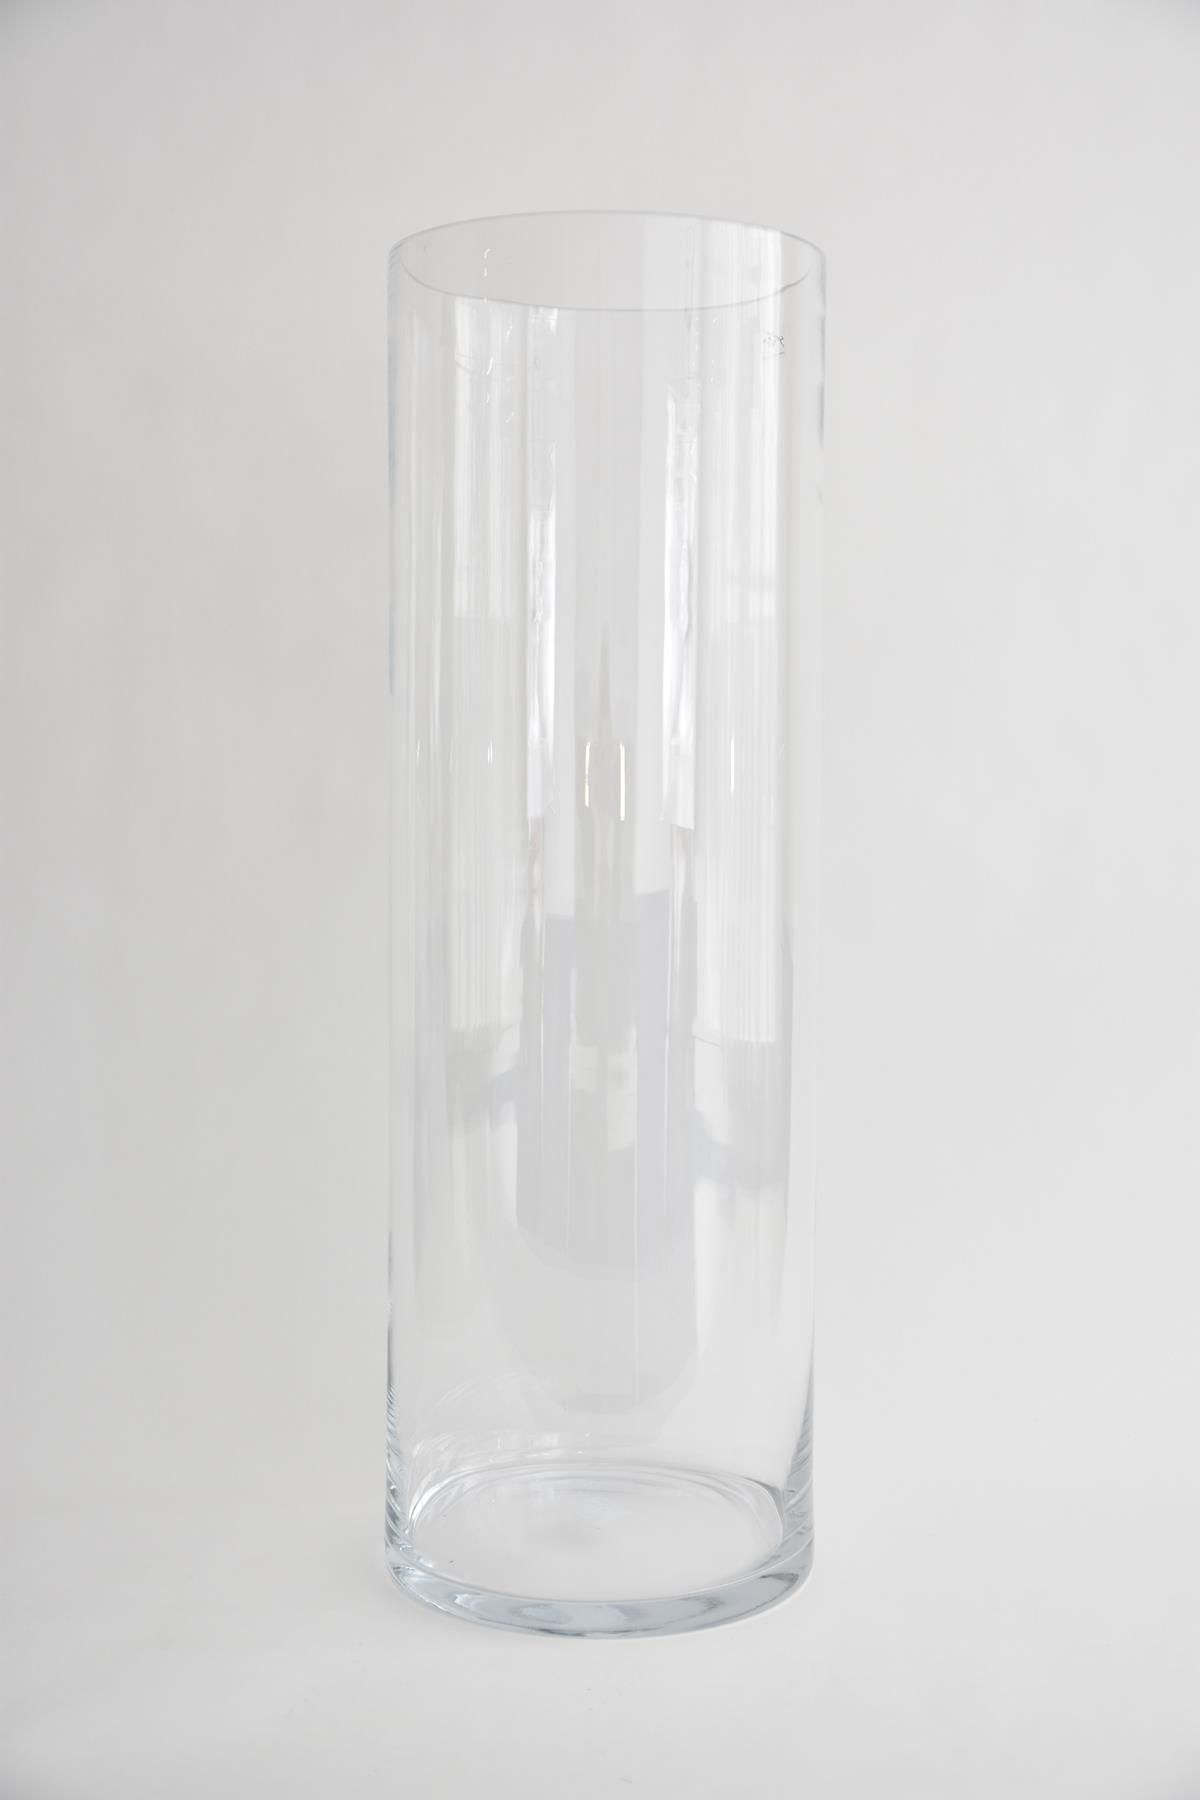 eend kwaadaardig spek XXL cilinder vaas glas helder H105 D25cm - Groothandel Wiljan